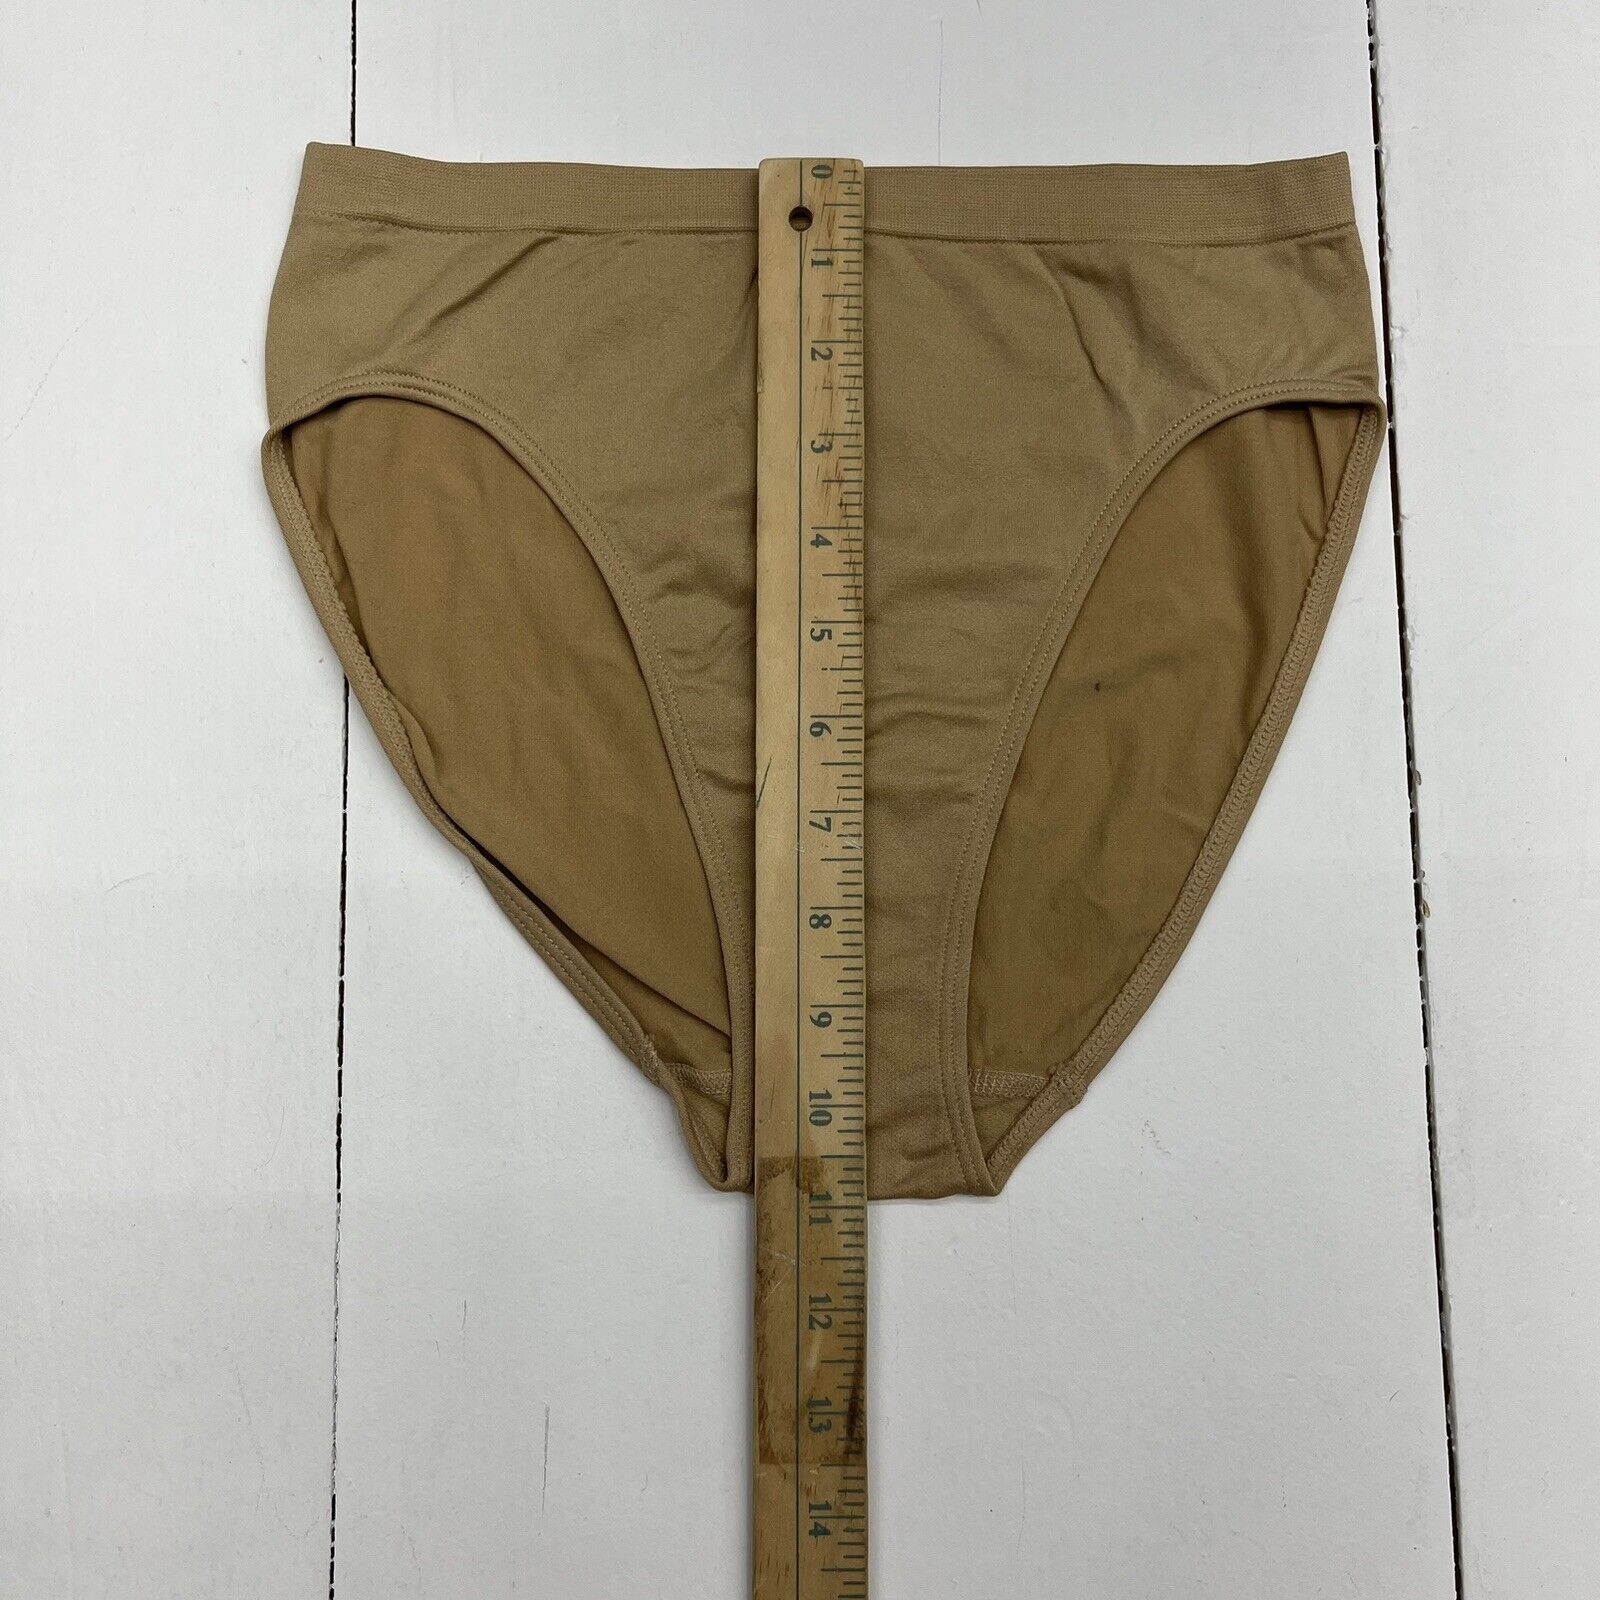 Rhonda Shear Panties 3 Pack Original Ahh Panty Black / Nude